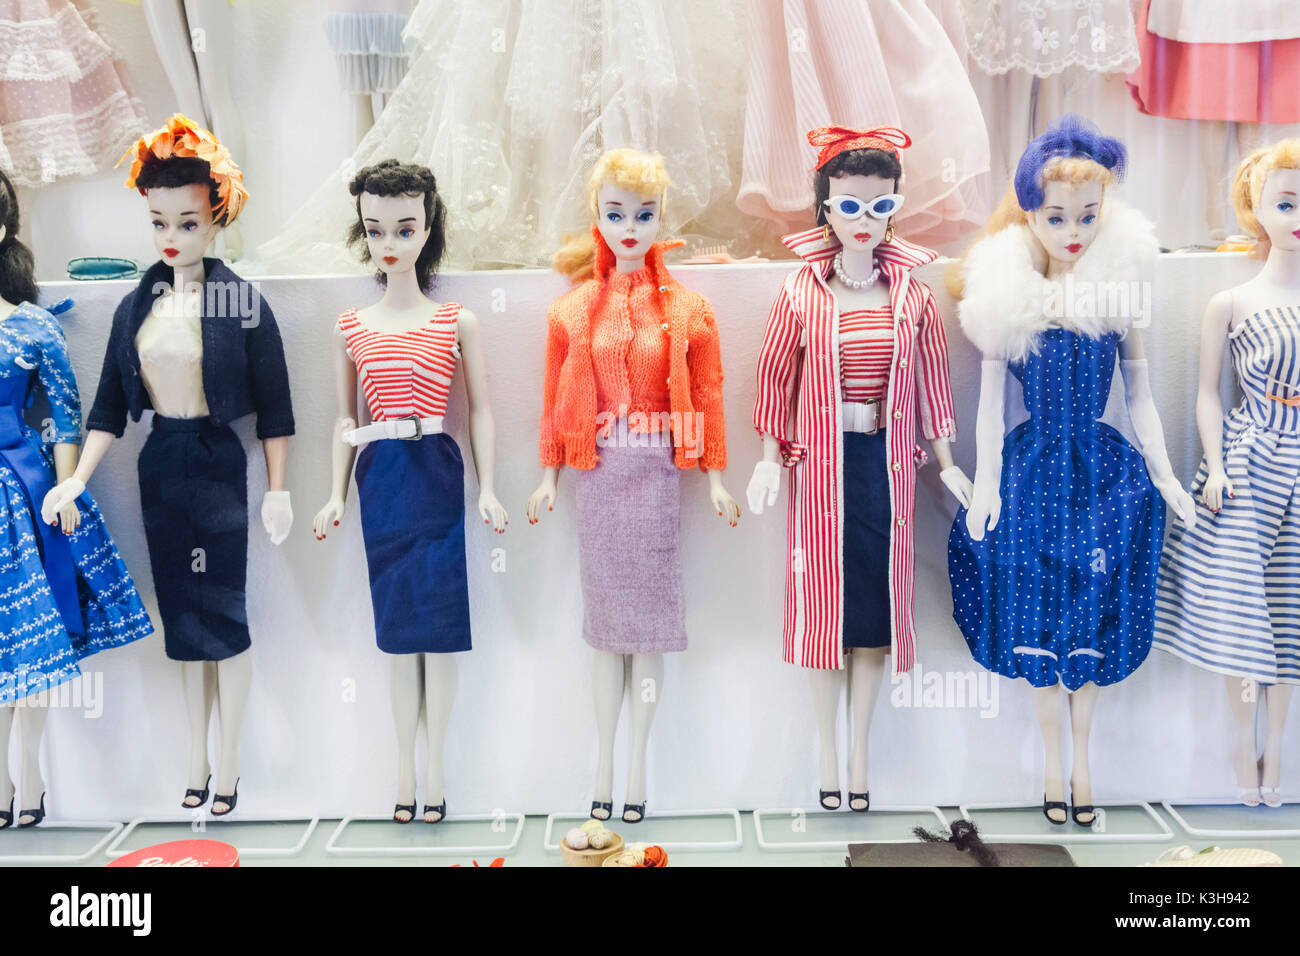 Deutschland, Bayern, München, Marienplatz, dem alten Rathaus, das Spielzeug  und Teddy Museum (Spielzeugmuseum), Ausstellung von Vintage Barbie Puppen  Stockfotografie - Alamy